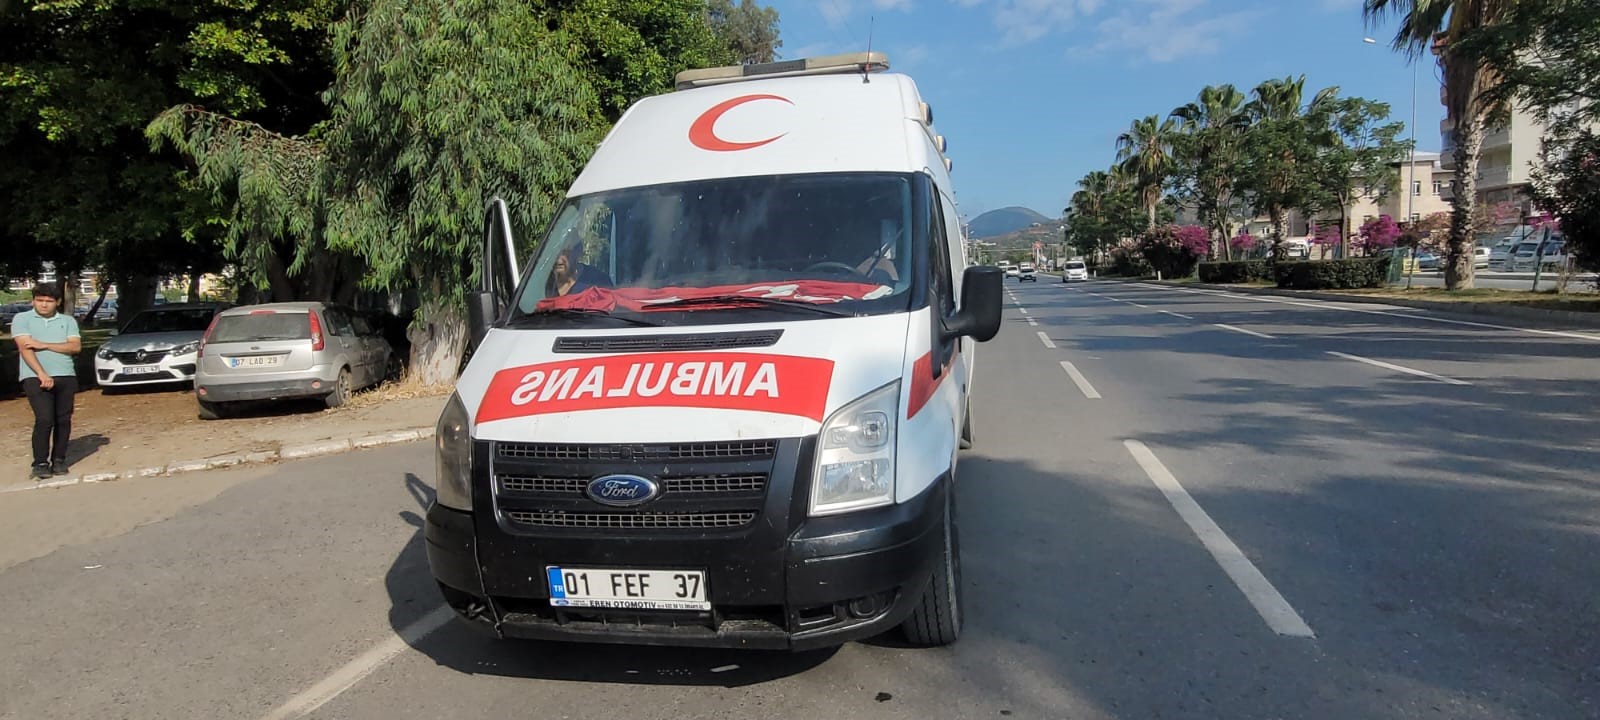 Gazipaşa'da durdurulan ambulansta kaçak sigara ele geçirildi